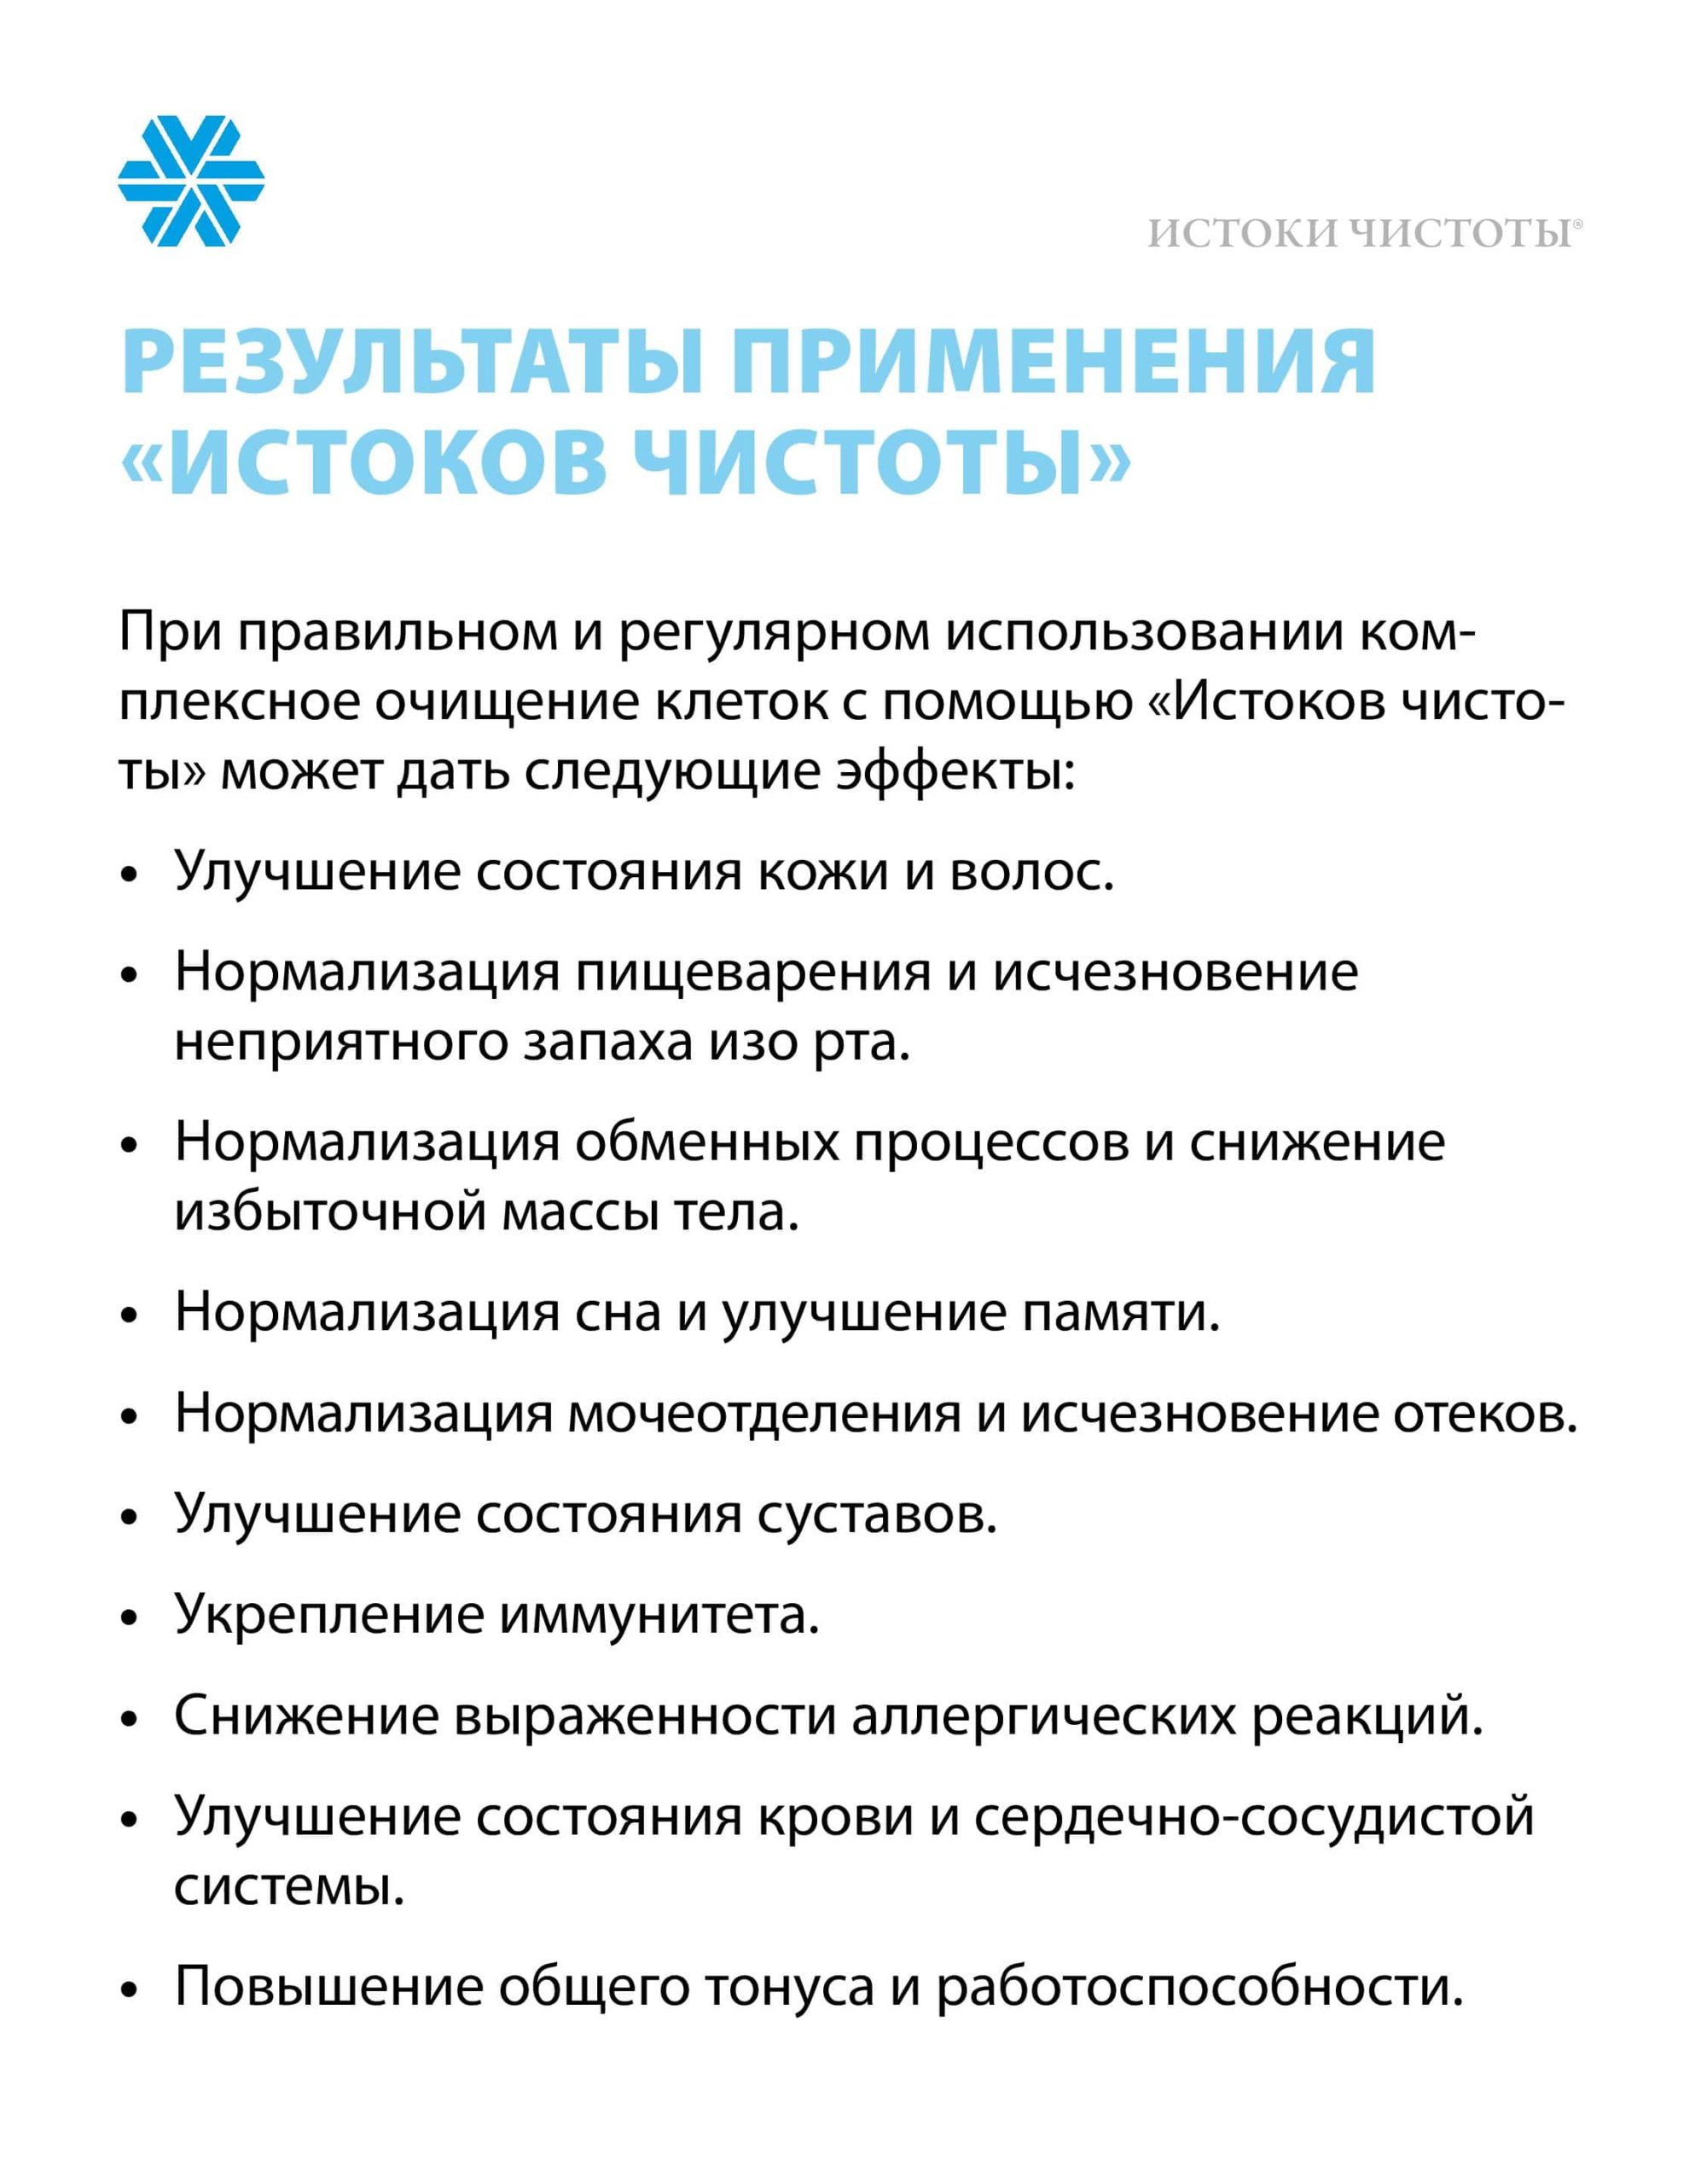 истоки чистоты сибирское здоровье